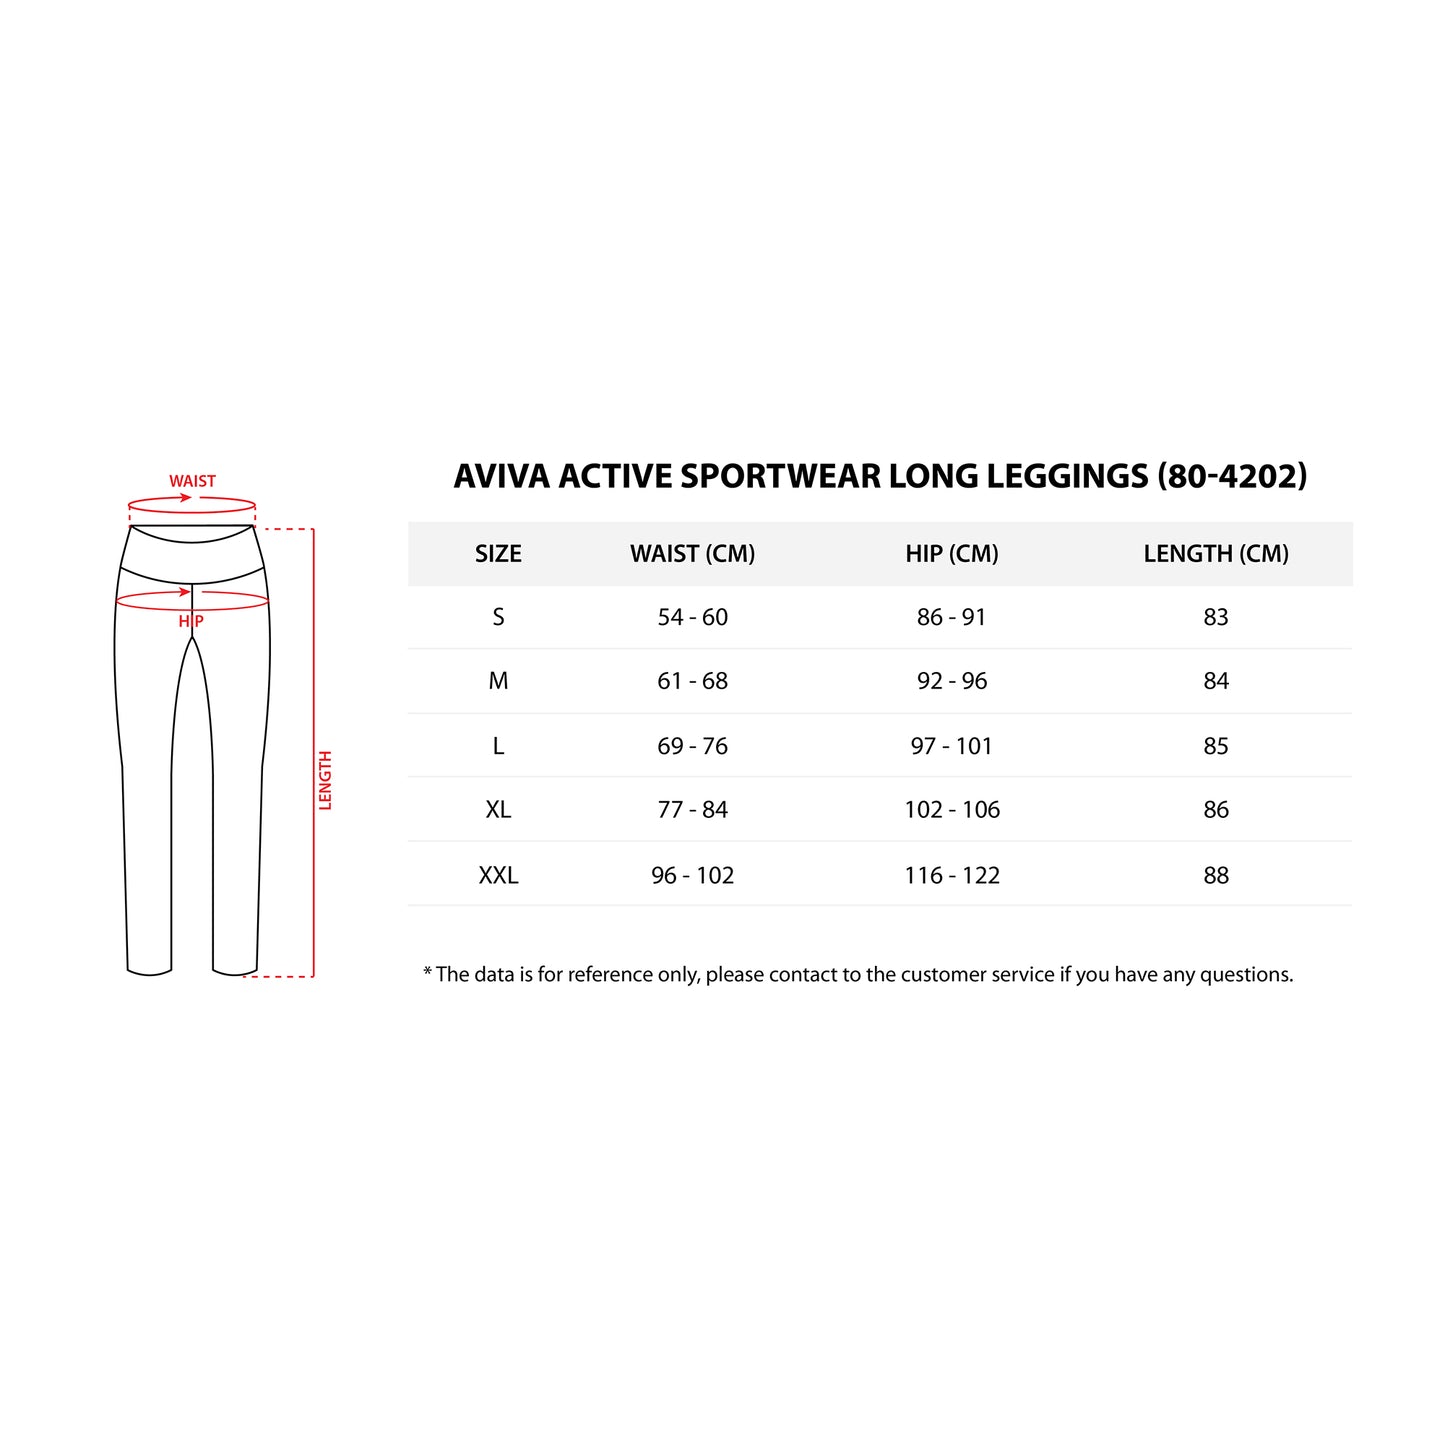 AVIVA Active Sportwear Long Leggings (80-4202)